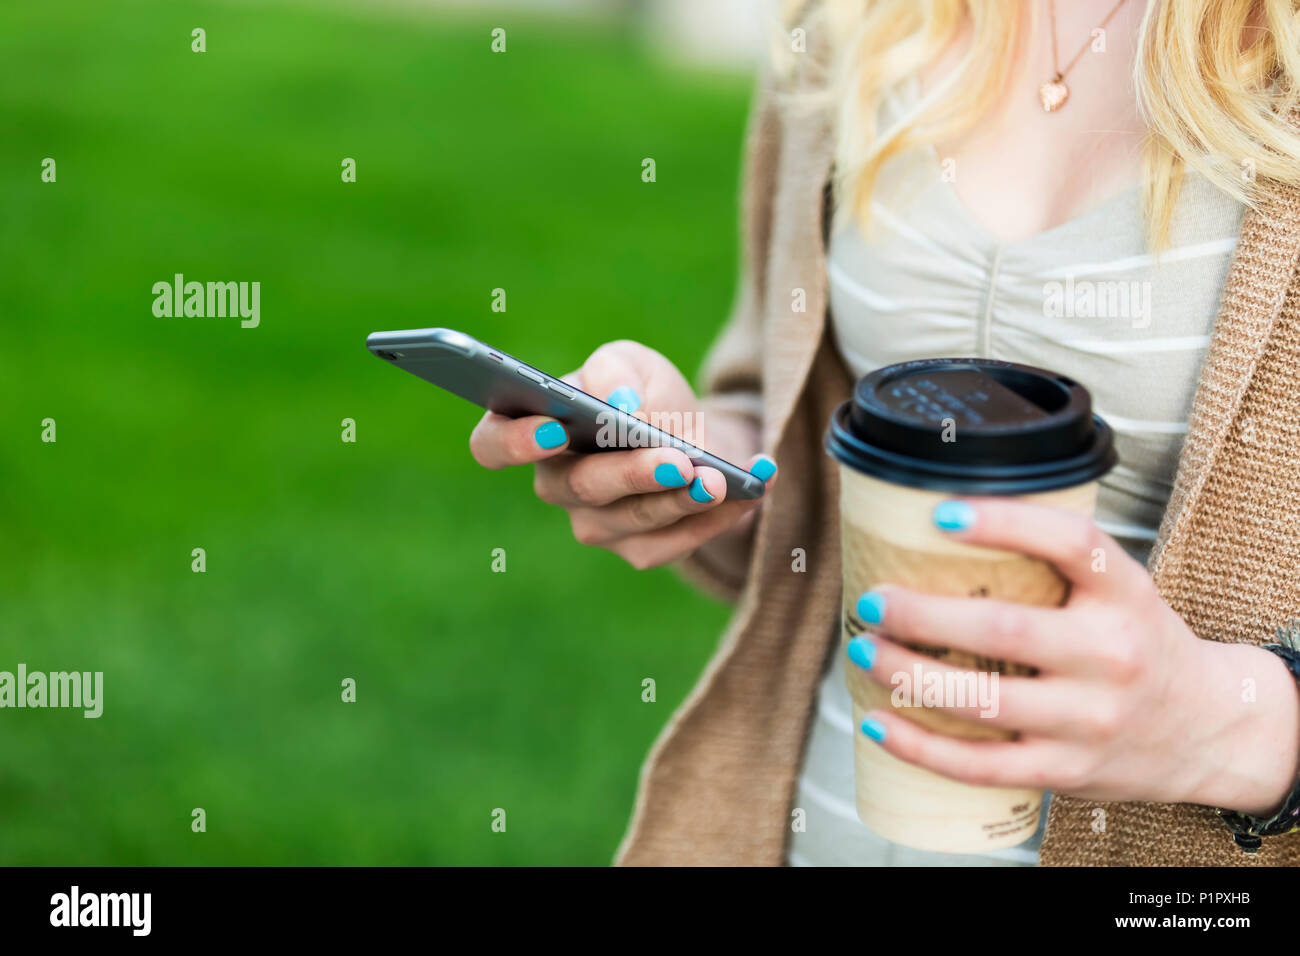 Nahaufnahmen der Hände ist eine junge Frau mit blauen Nagellack Holding eine Tasse Kaffee und Textnachrichten auf Ihrem smart phone; Edmonton, Alberta, Kanada Stockfoto